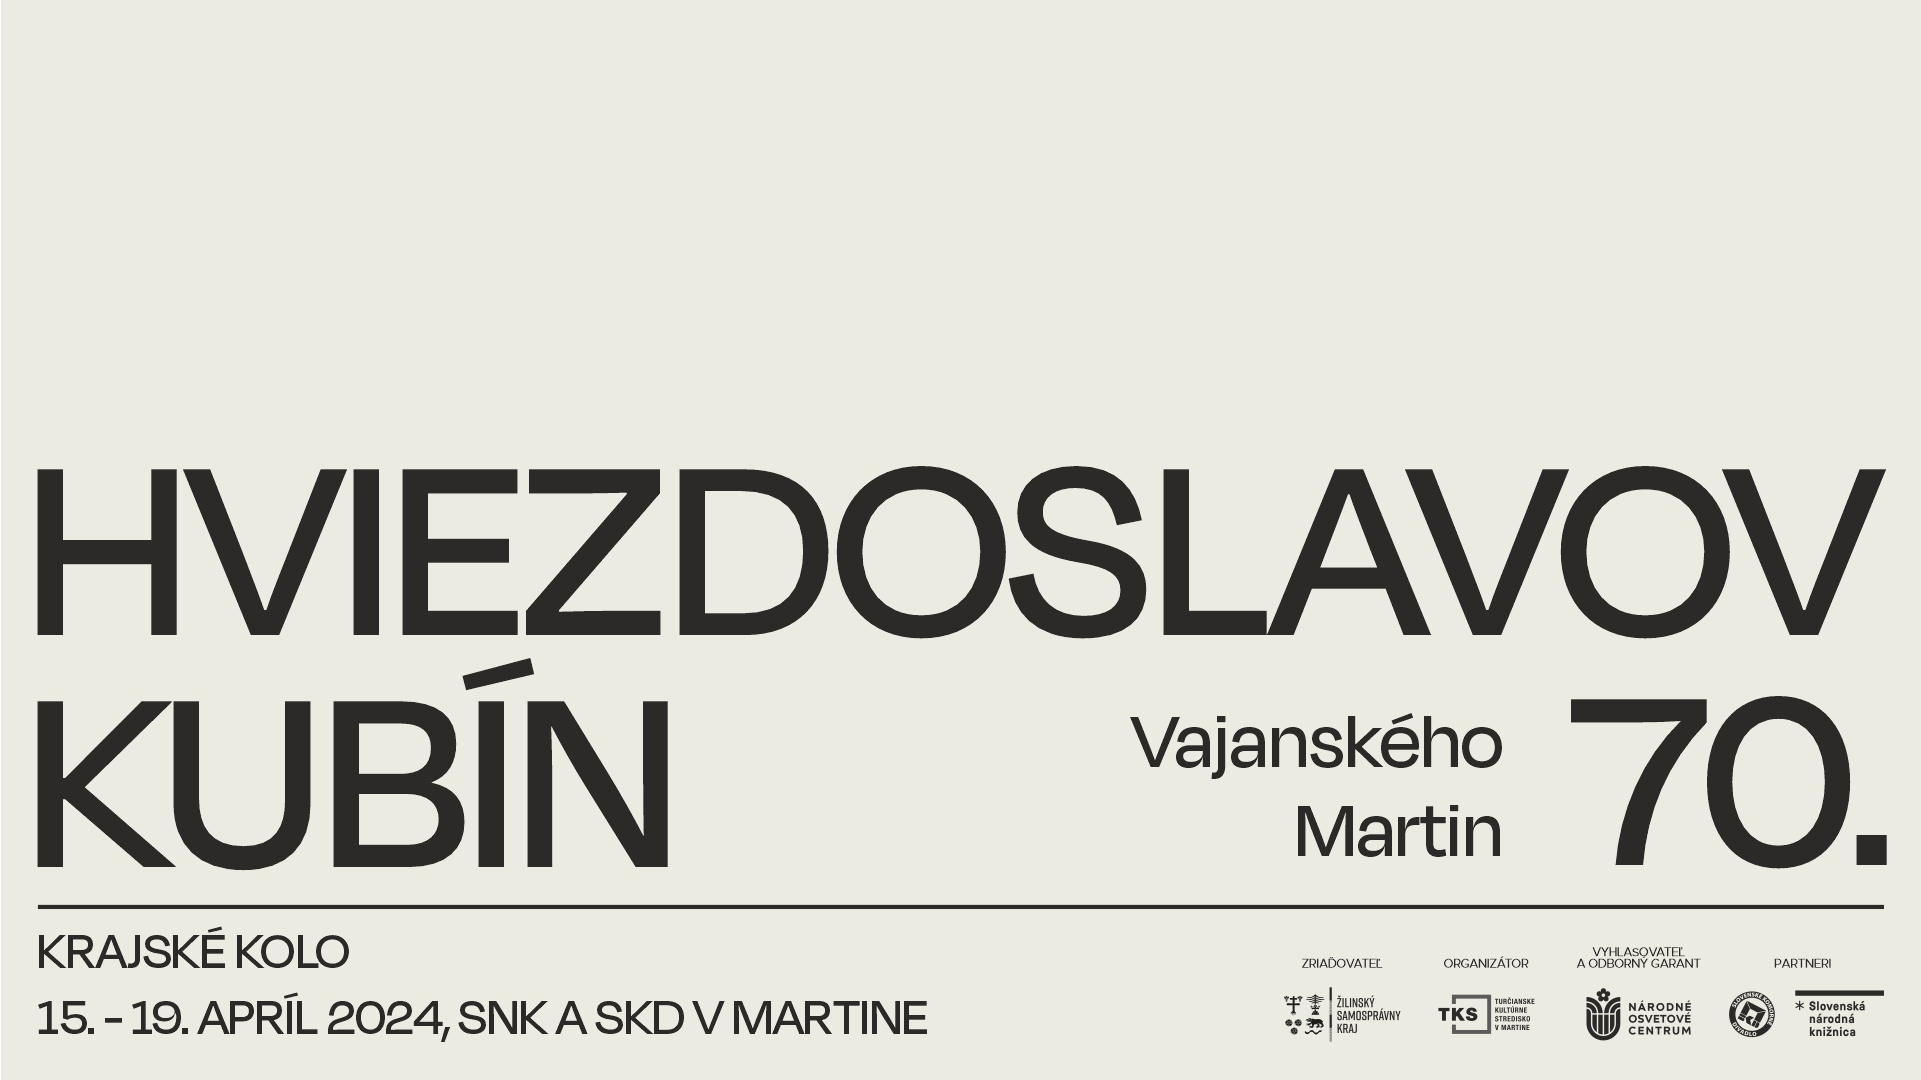 Pozvánka Krajské kolo – Hviezdoslavov Kubín 2024 – Vajanského Martin